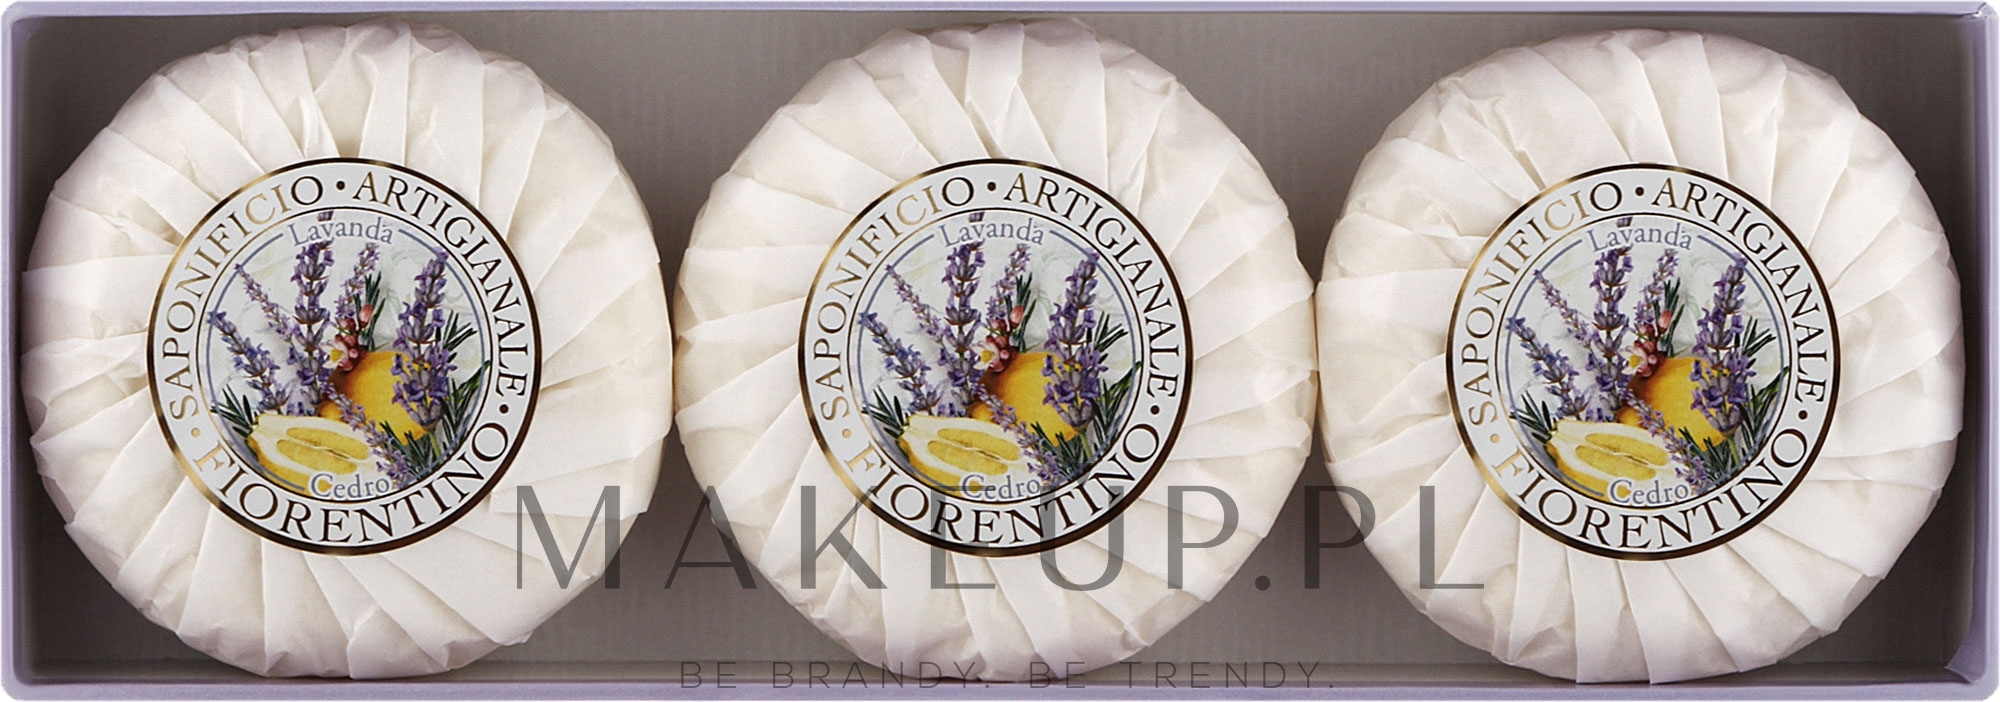 Zestaw naturalnych mydeł w kostce Cedr i lawenda - Saponificio Artigianale Fiorentino Capri Lavender & Cedar (3 x soap 100 g) — Zdjęcie 3 x 100 g